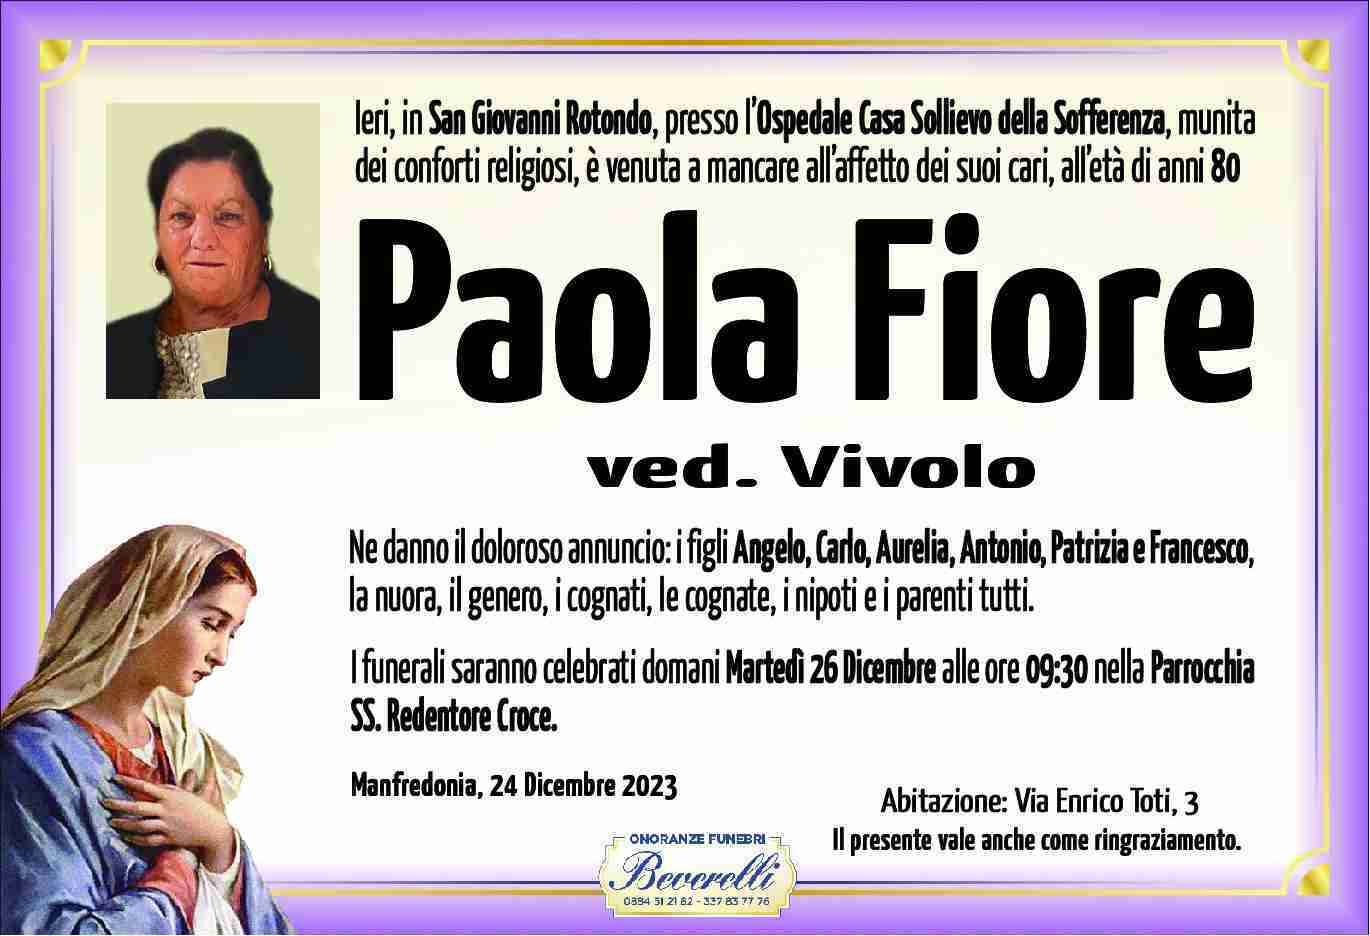 Paola Fiore